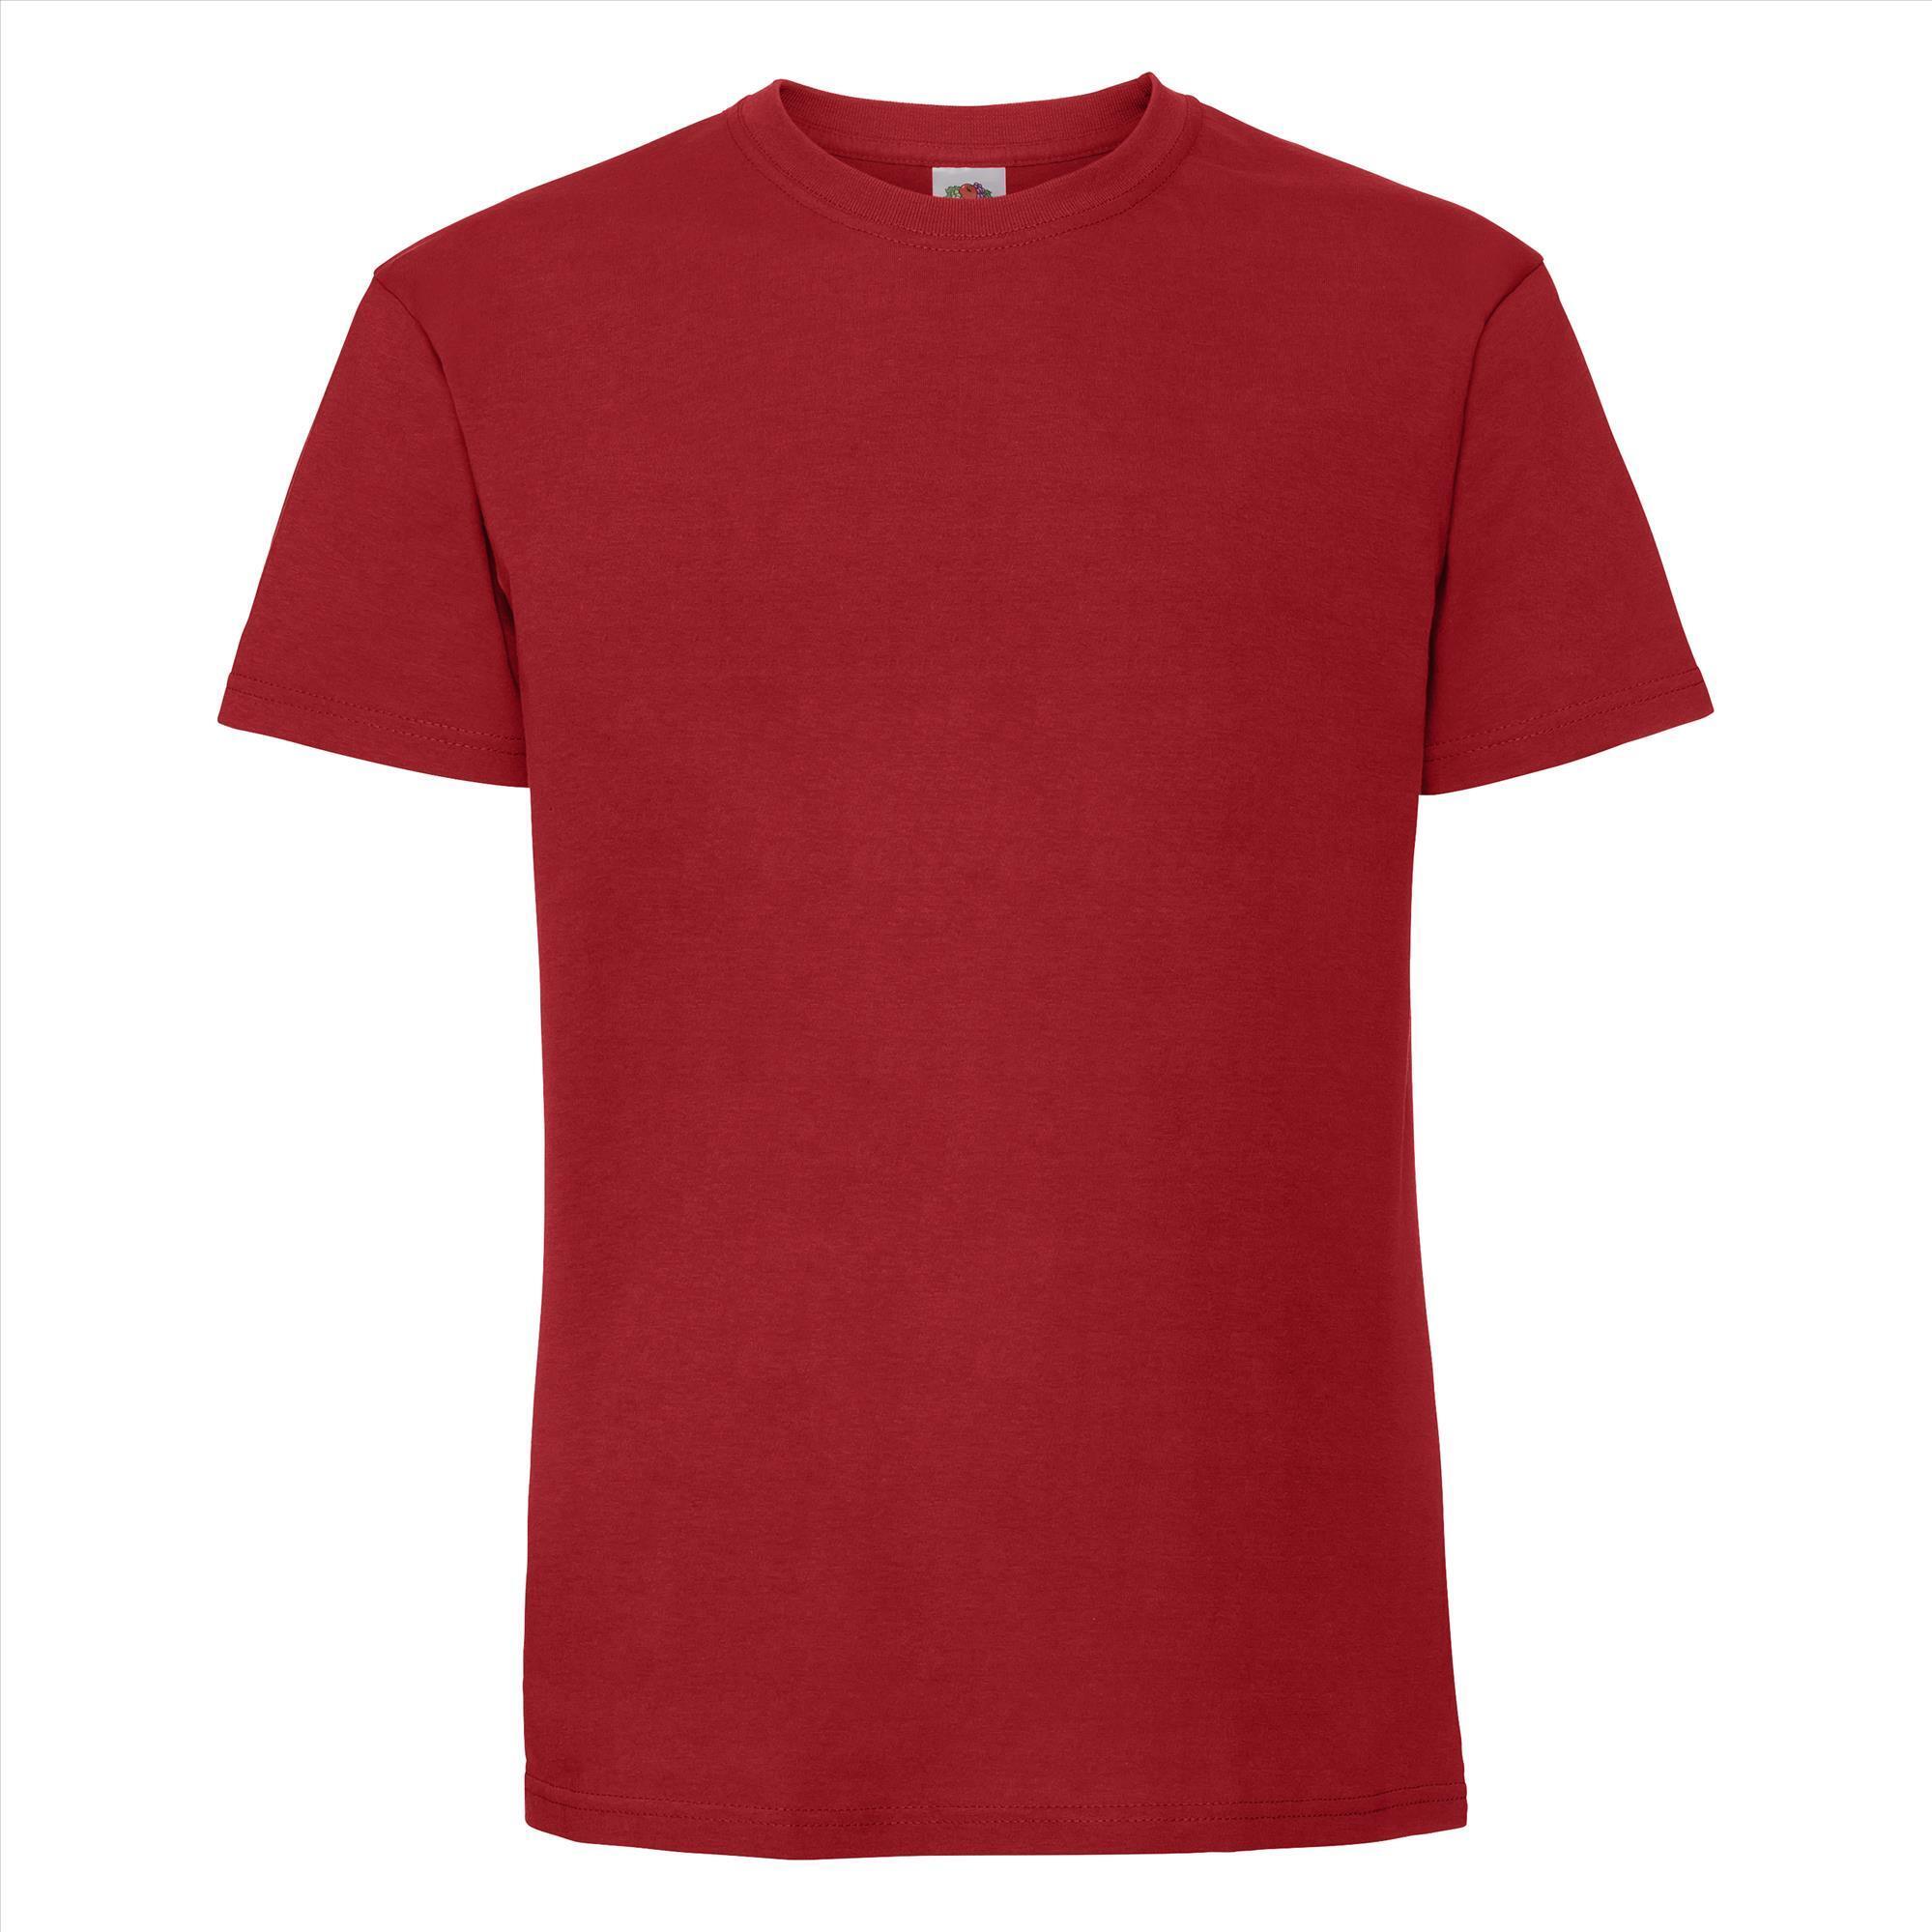 T-shirt rood korte mouwen voor mannen bedrukbaar te personaliseren